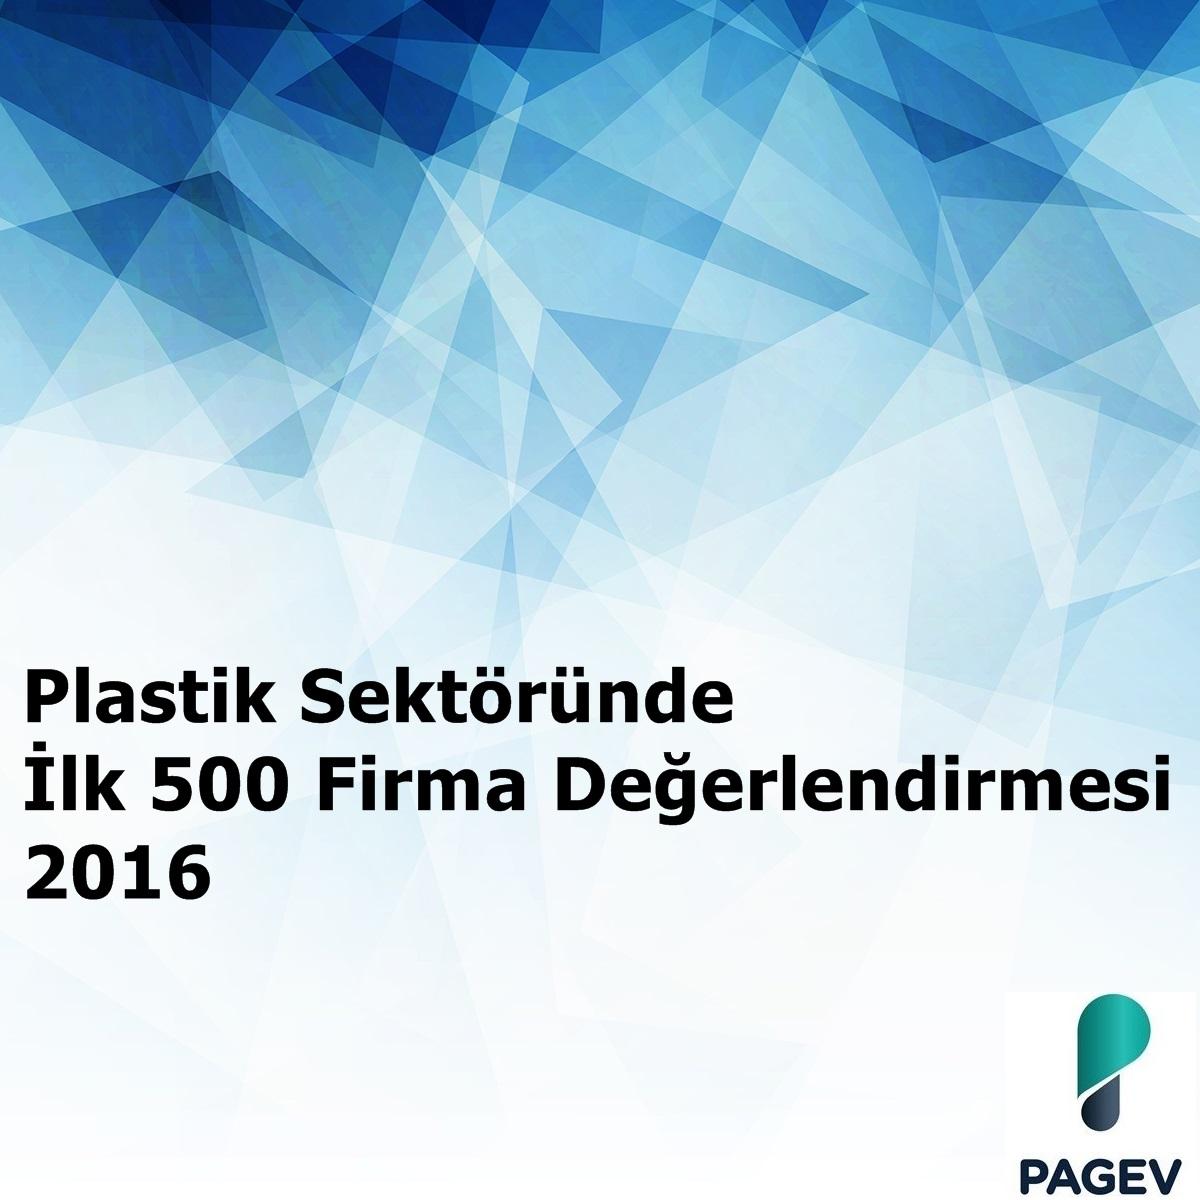 Plastik Sektöründe İlk 500 Firma Değerlendirmesi - 2016